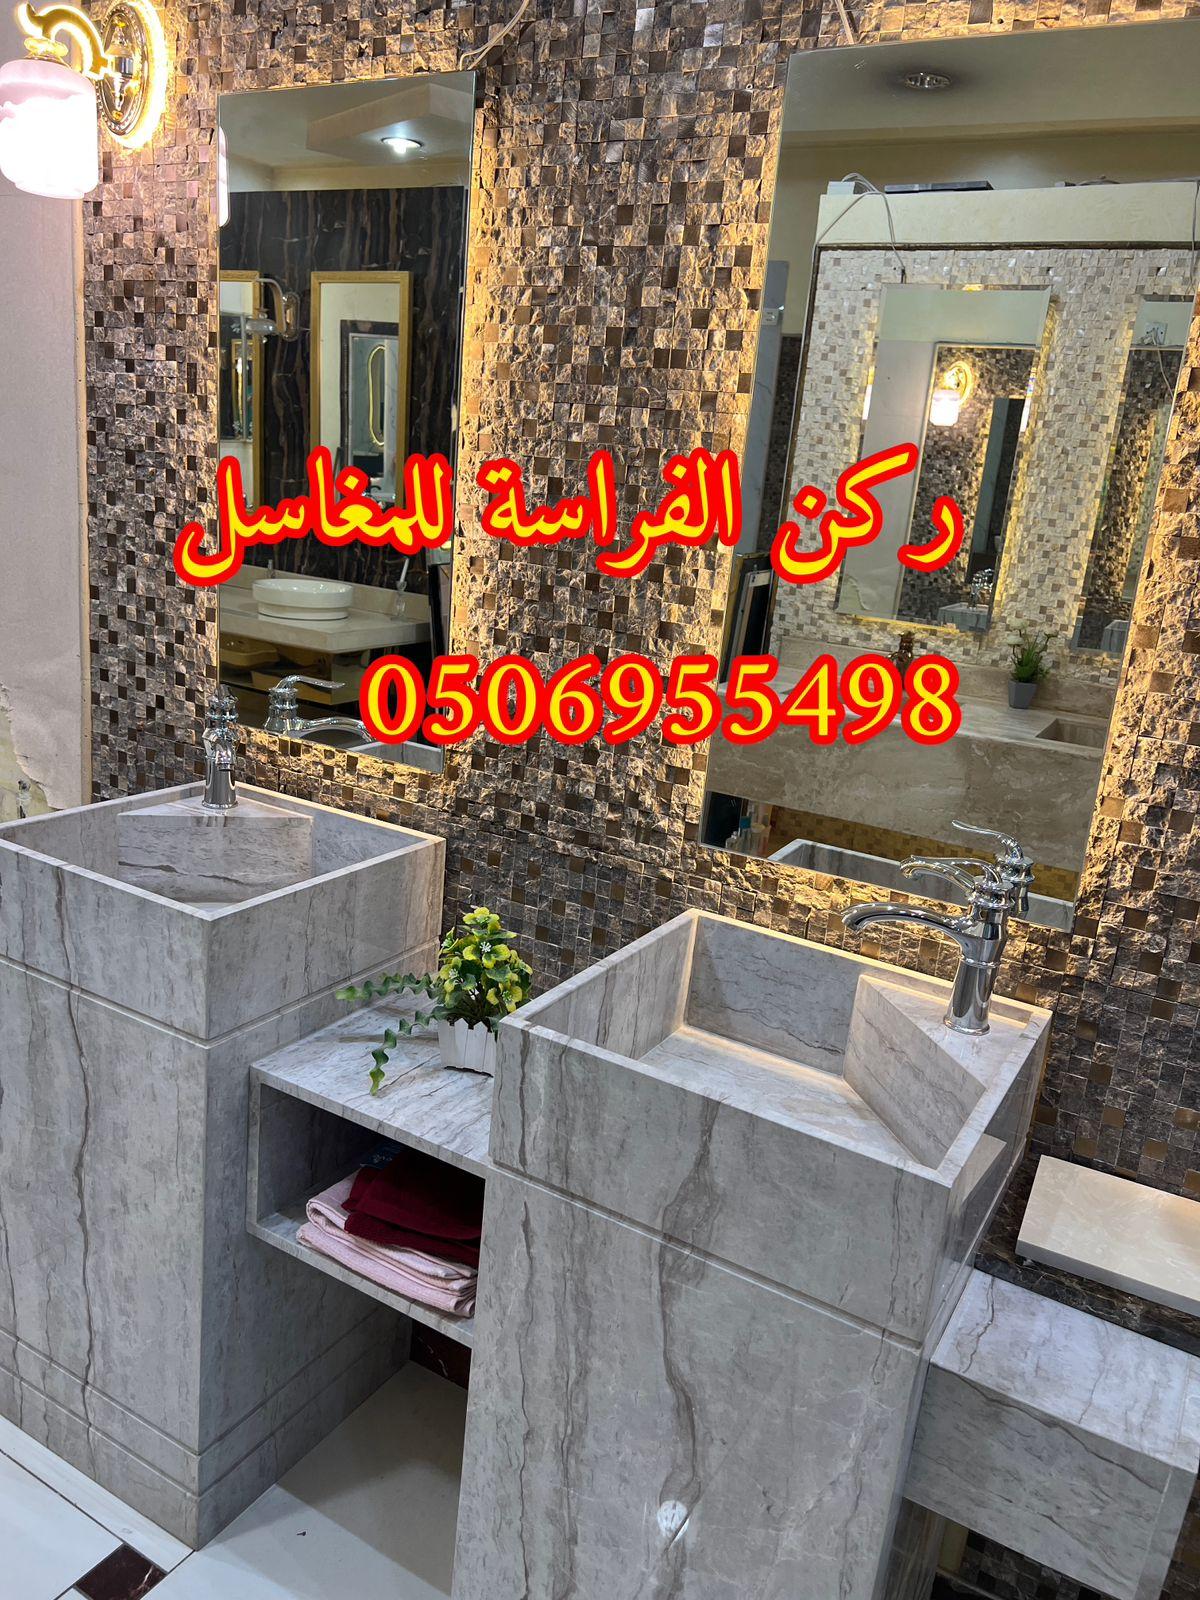 الرياض - تفصيل احواض مغاسل رخام في الرياض,0506955498 851250385